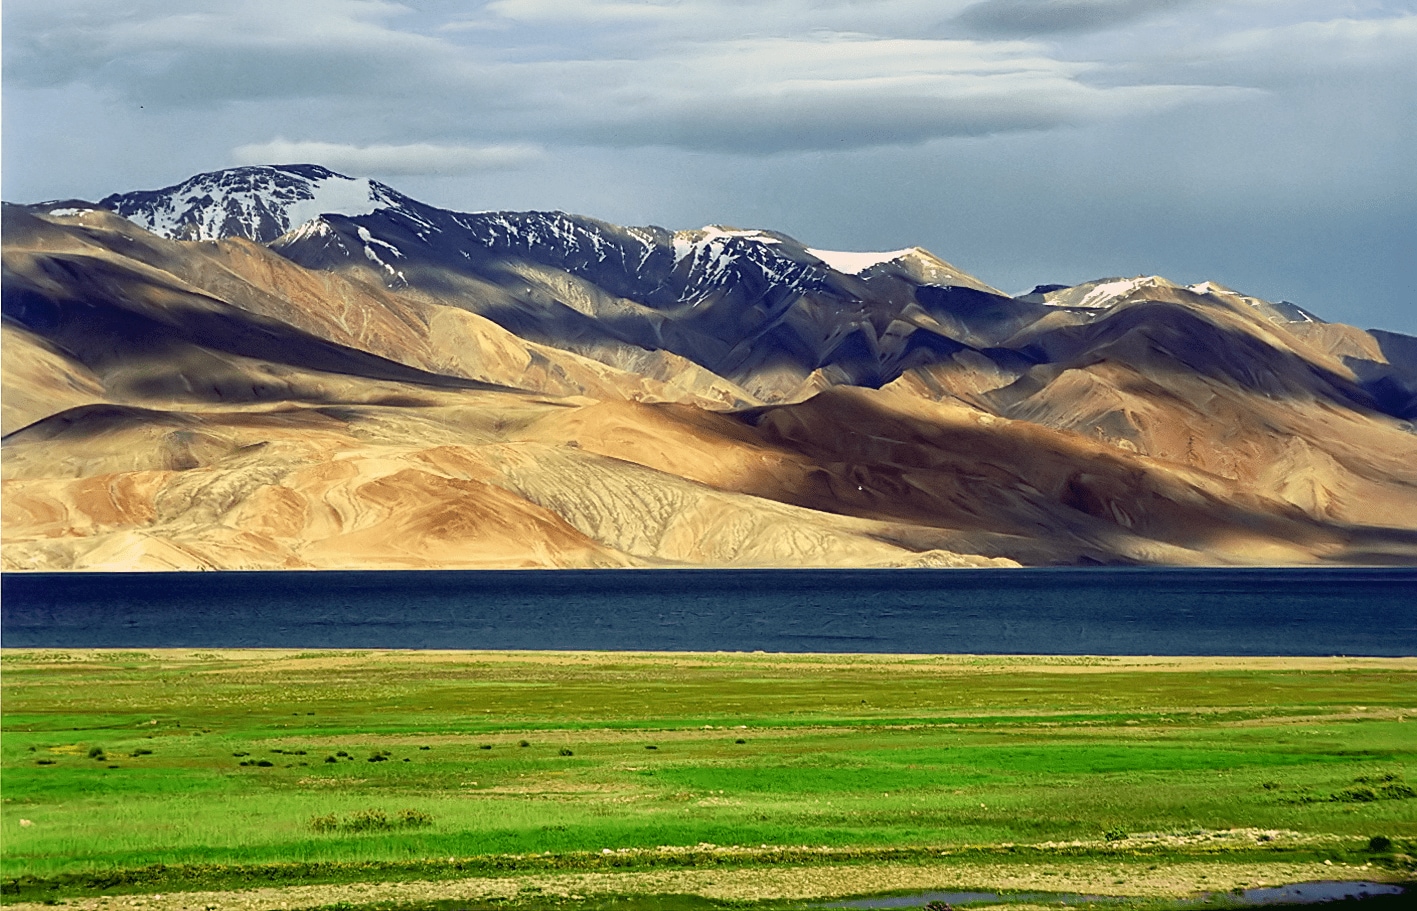 Ladakh - the coldest desert in the world